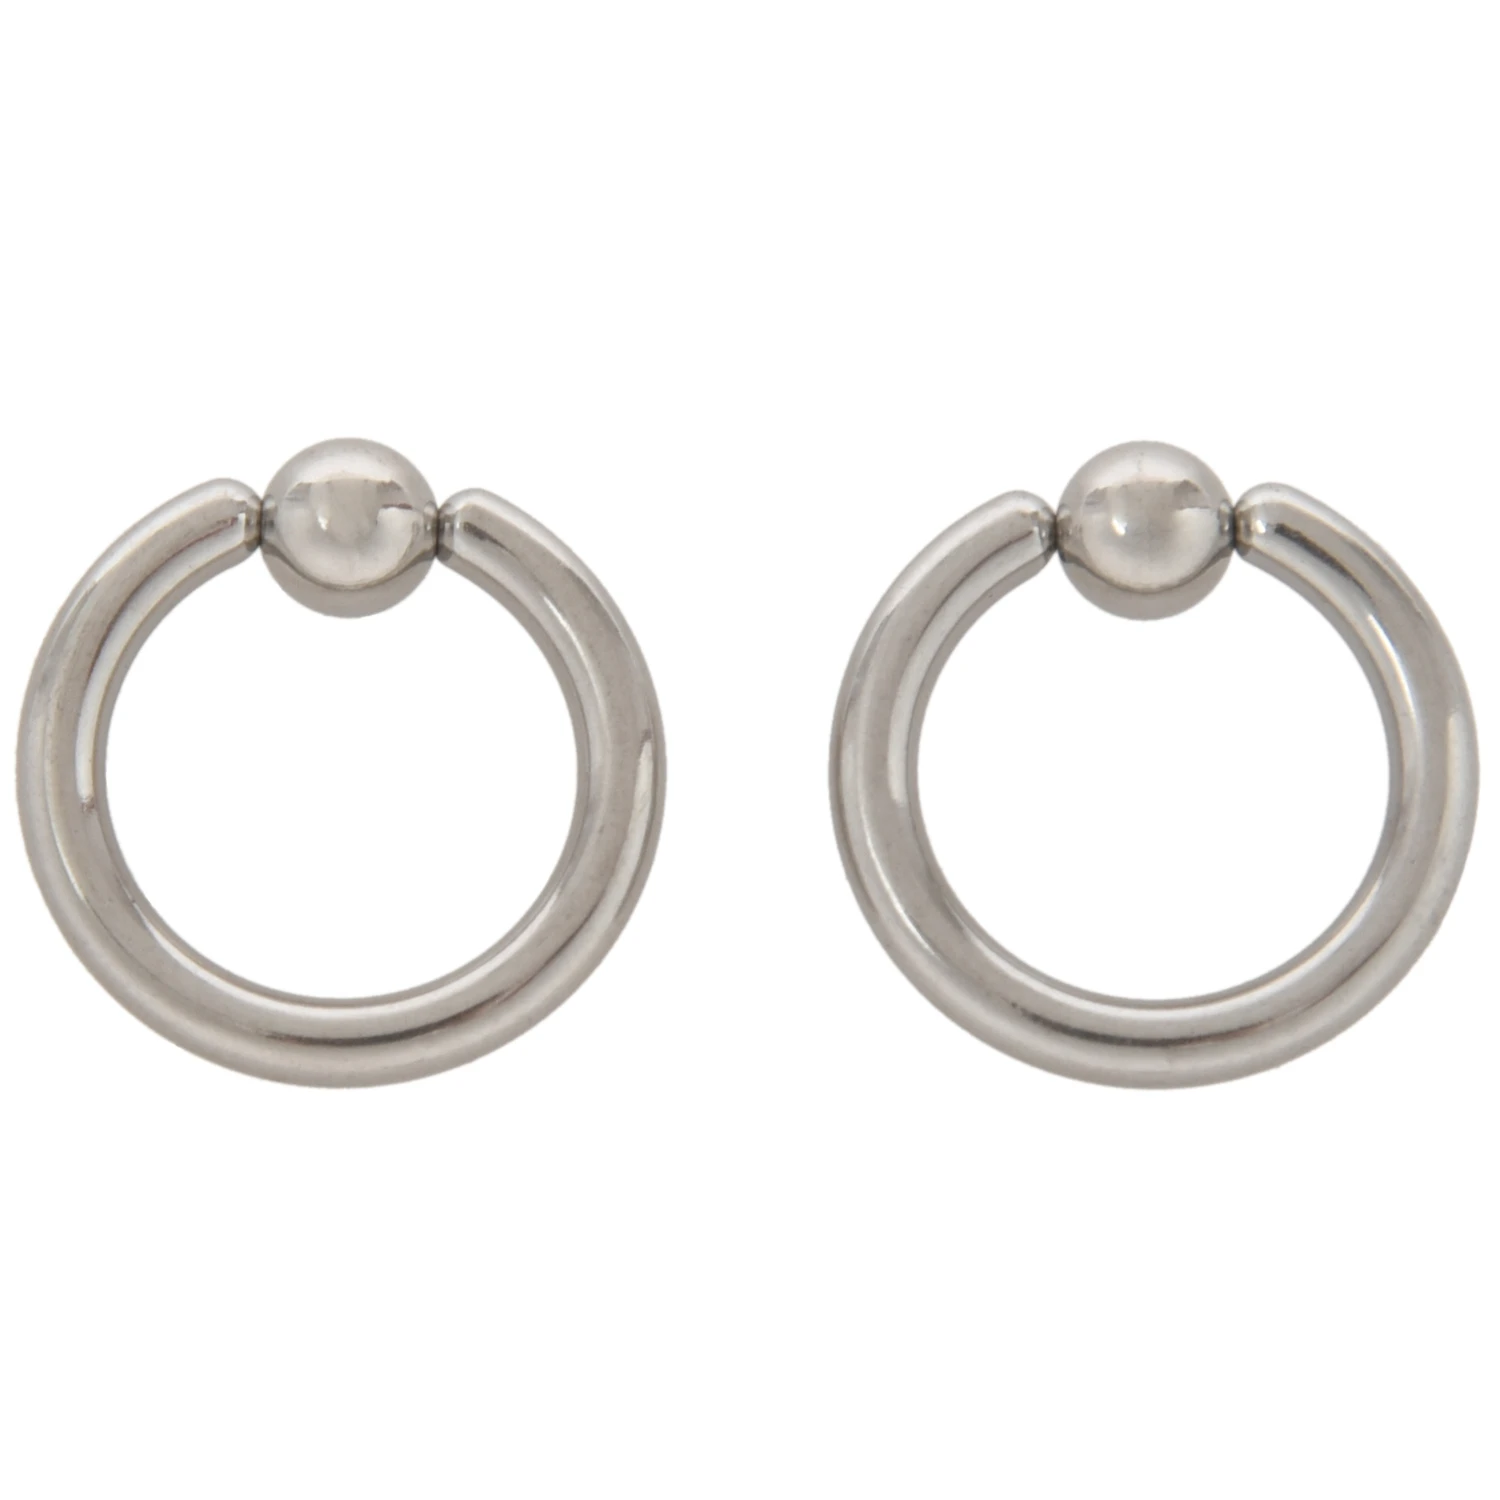 

1 Pair Stainless Steel Captive Bead Ear Rings Hoop BCR Studs Piercing Jewelry Steel color, 8g(3.2mm)x16mm